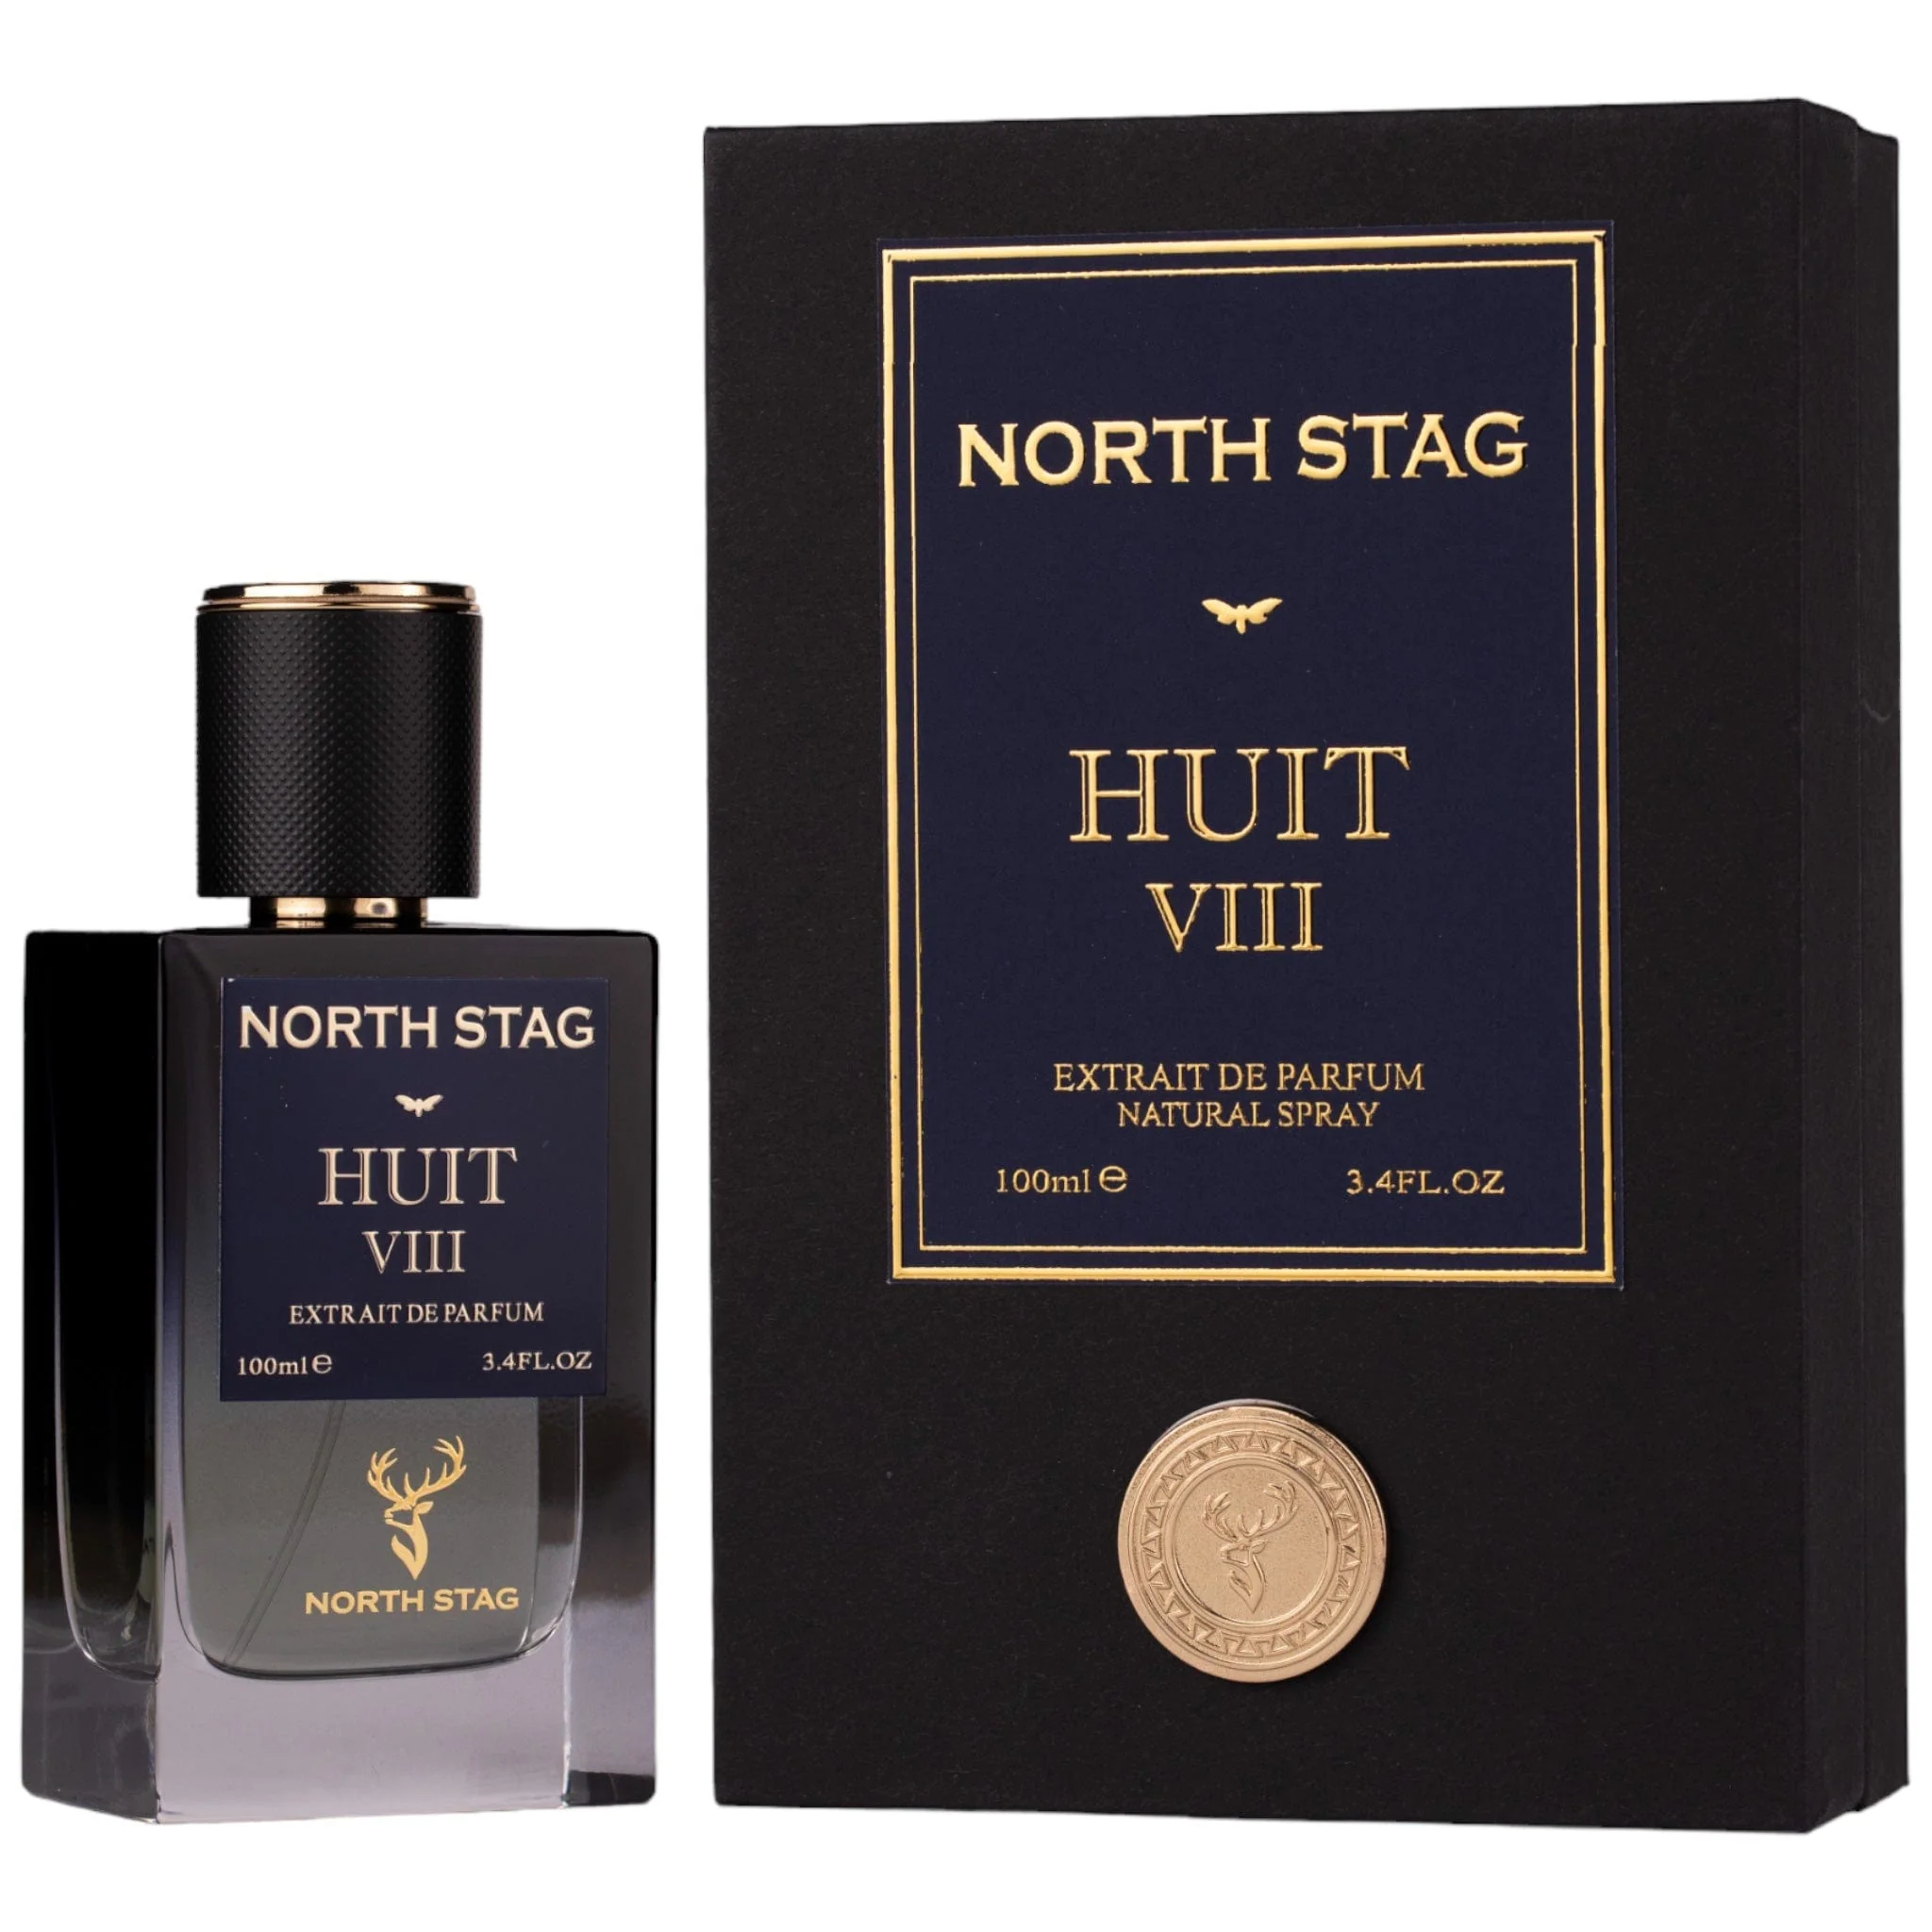 north stag huit viii ekstrakt perfum 100 ml   